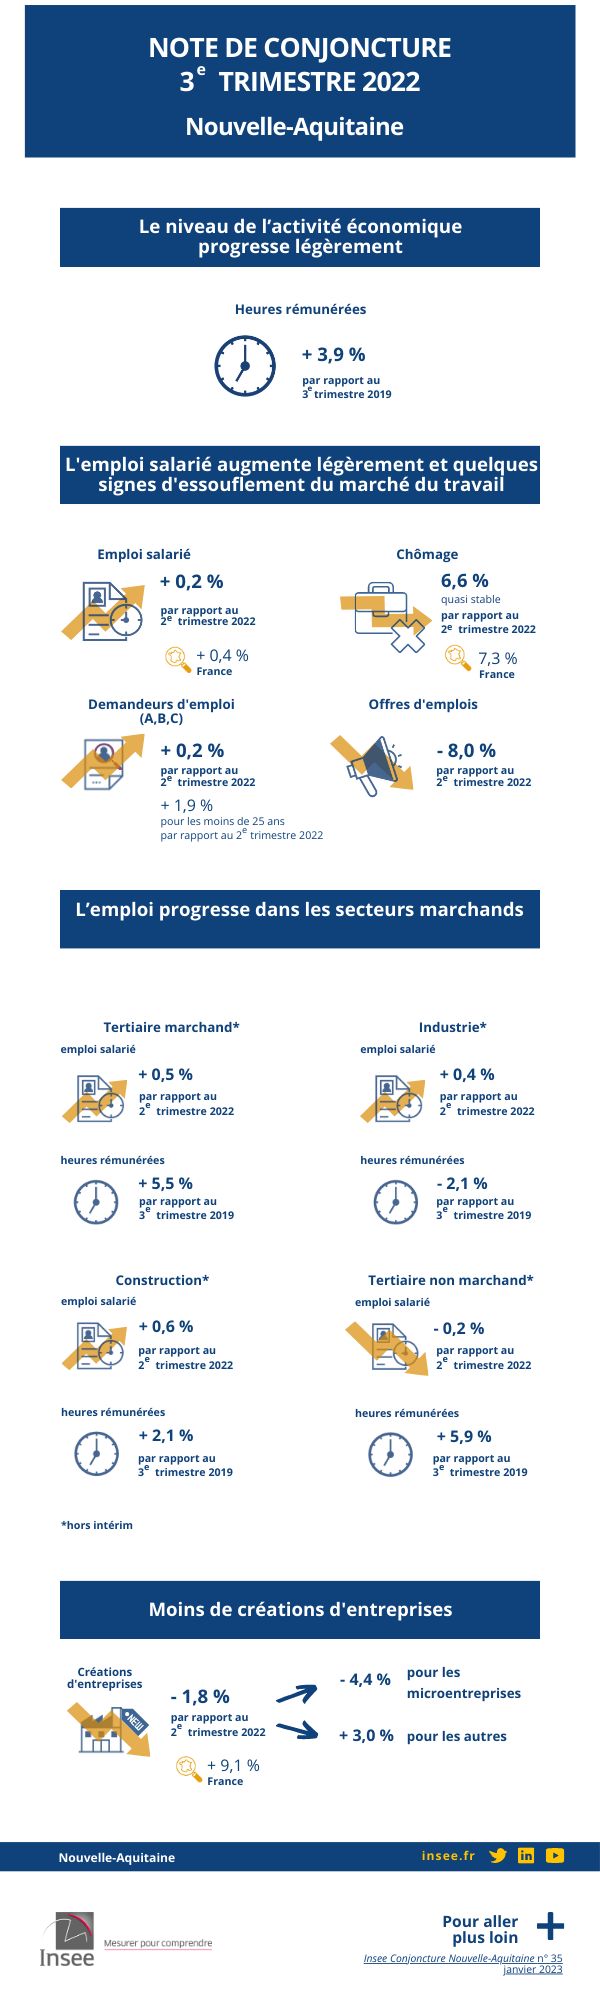 Infographie de la note de conjoncture du troisième trimestre 2022 de Nouvelle-Aquitaine.